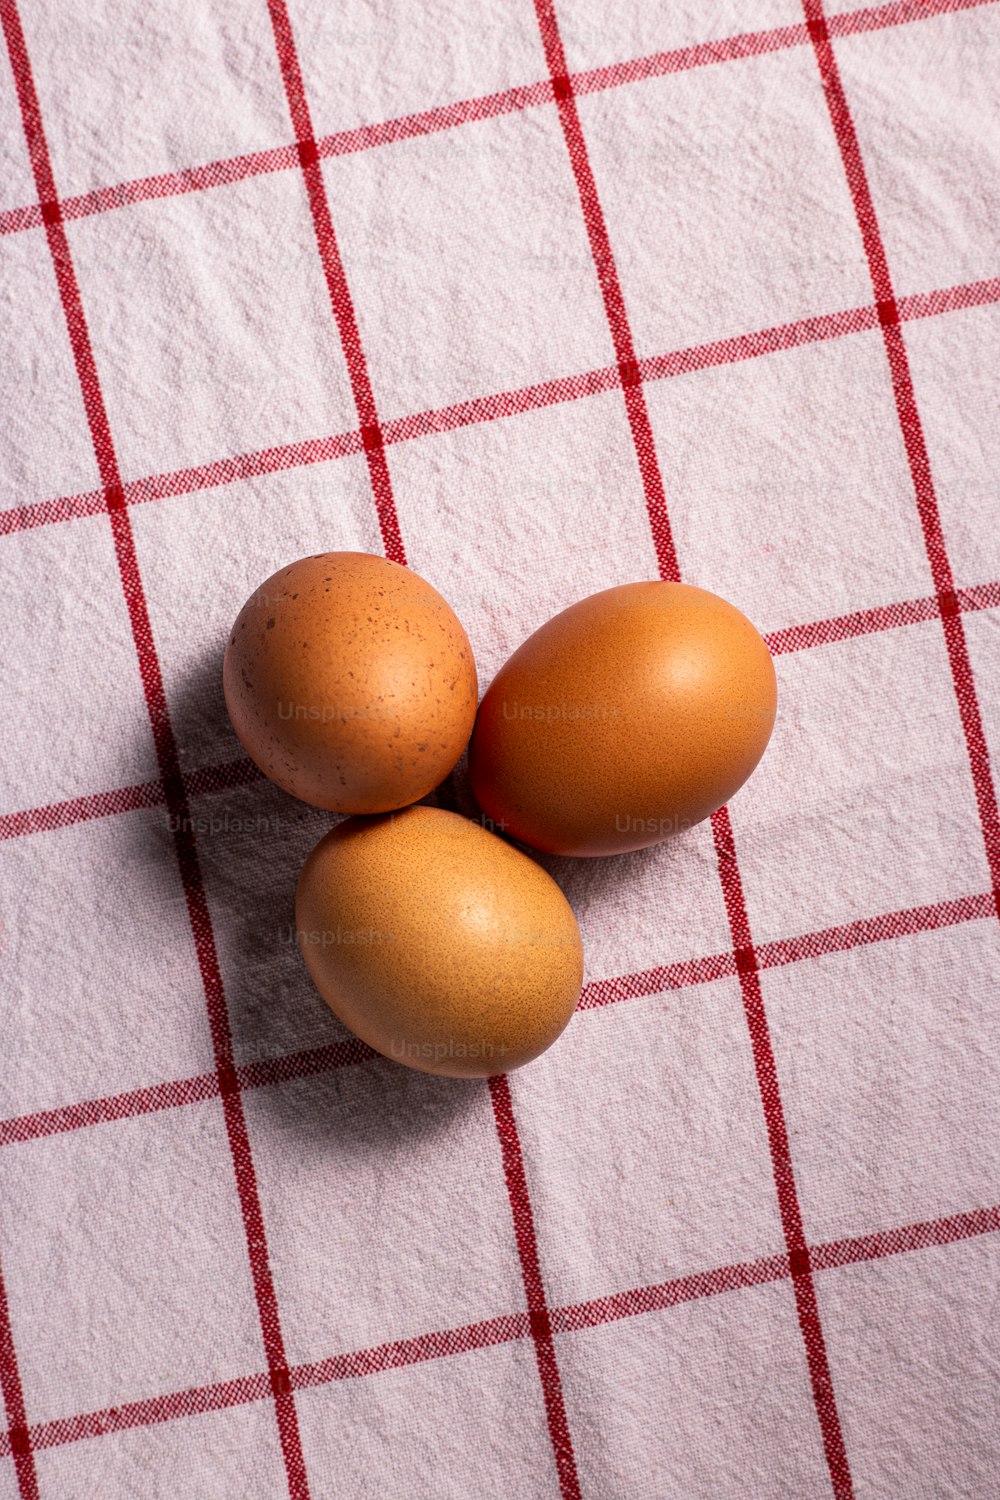 trois œufs bruns sur une nappe à carreaux rouge et blanc